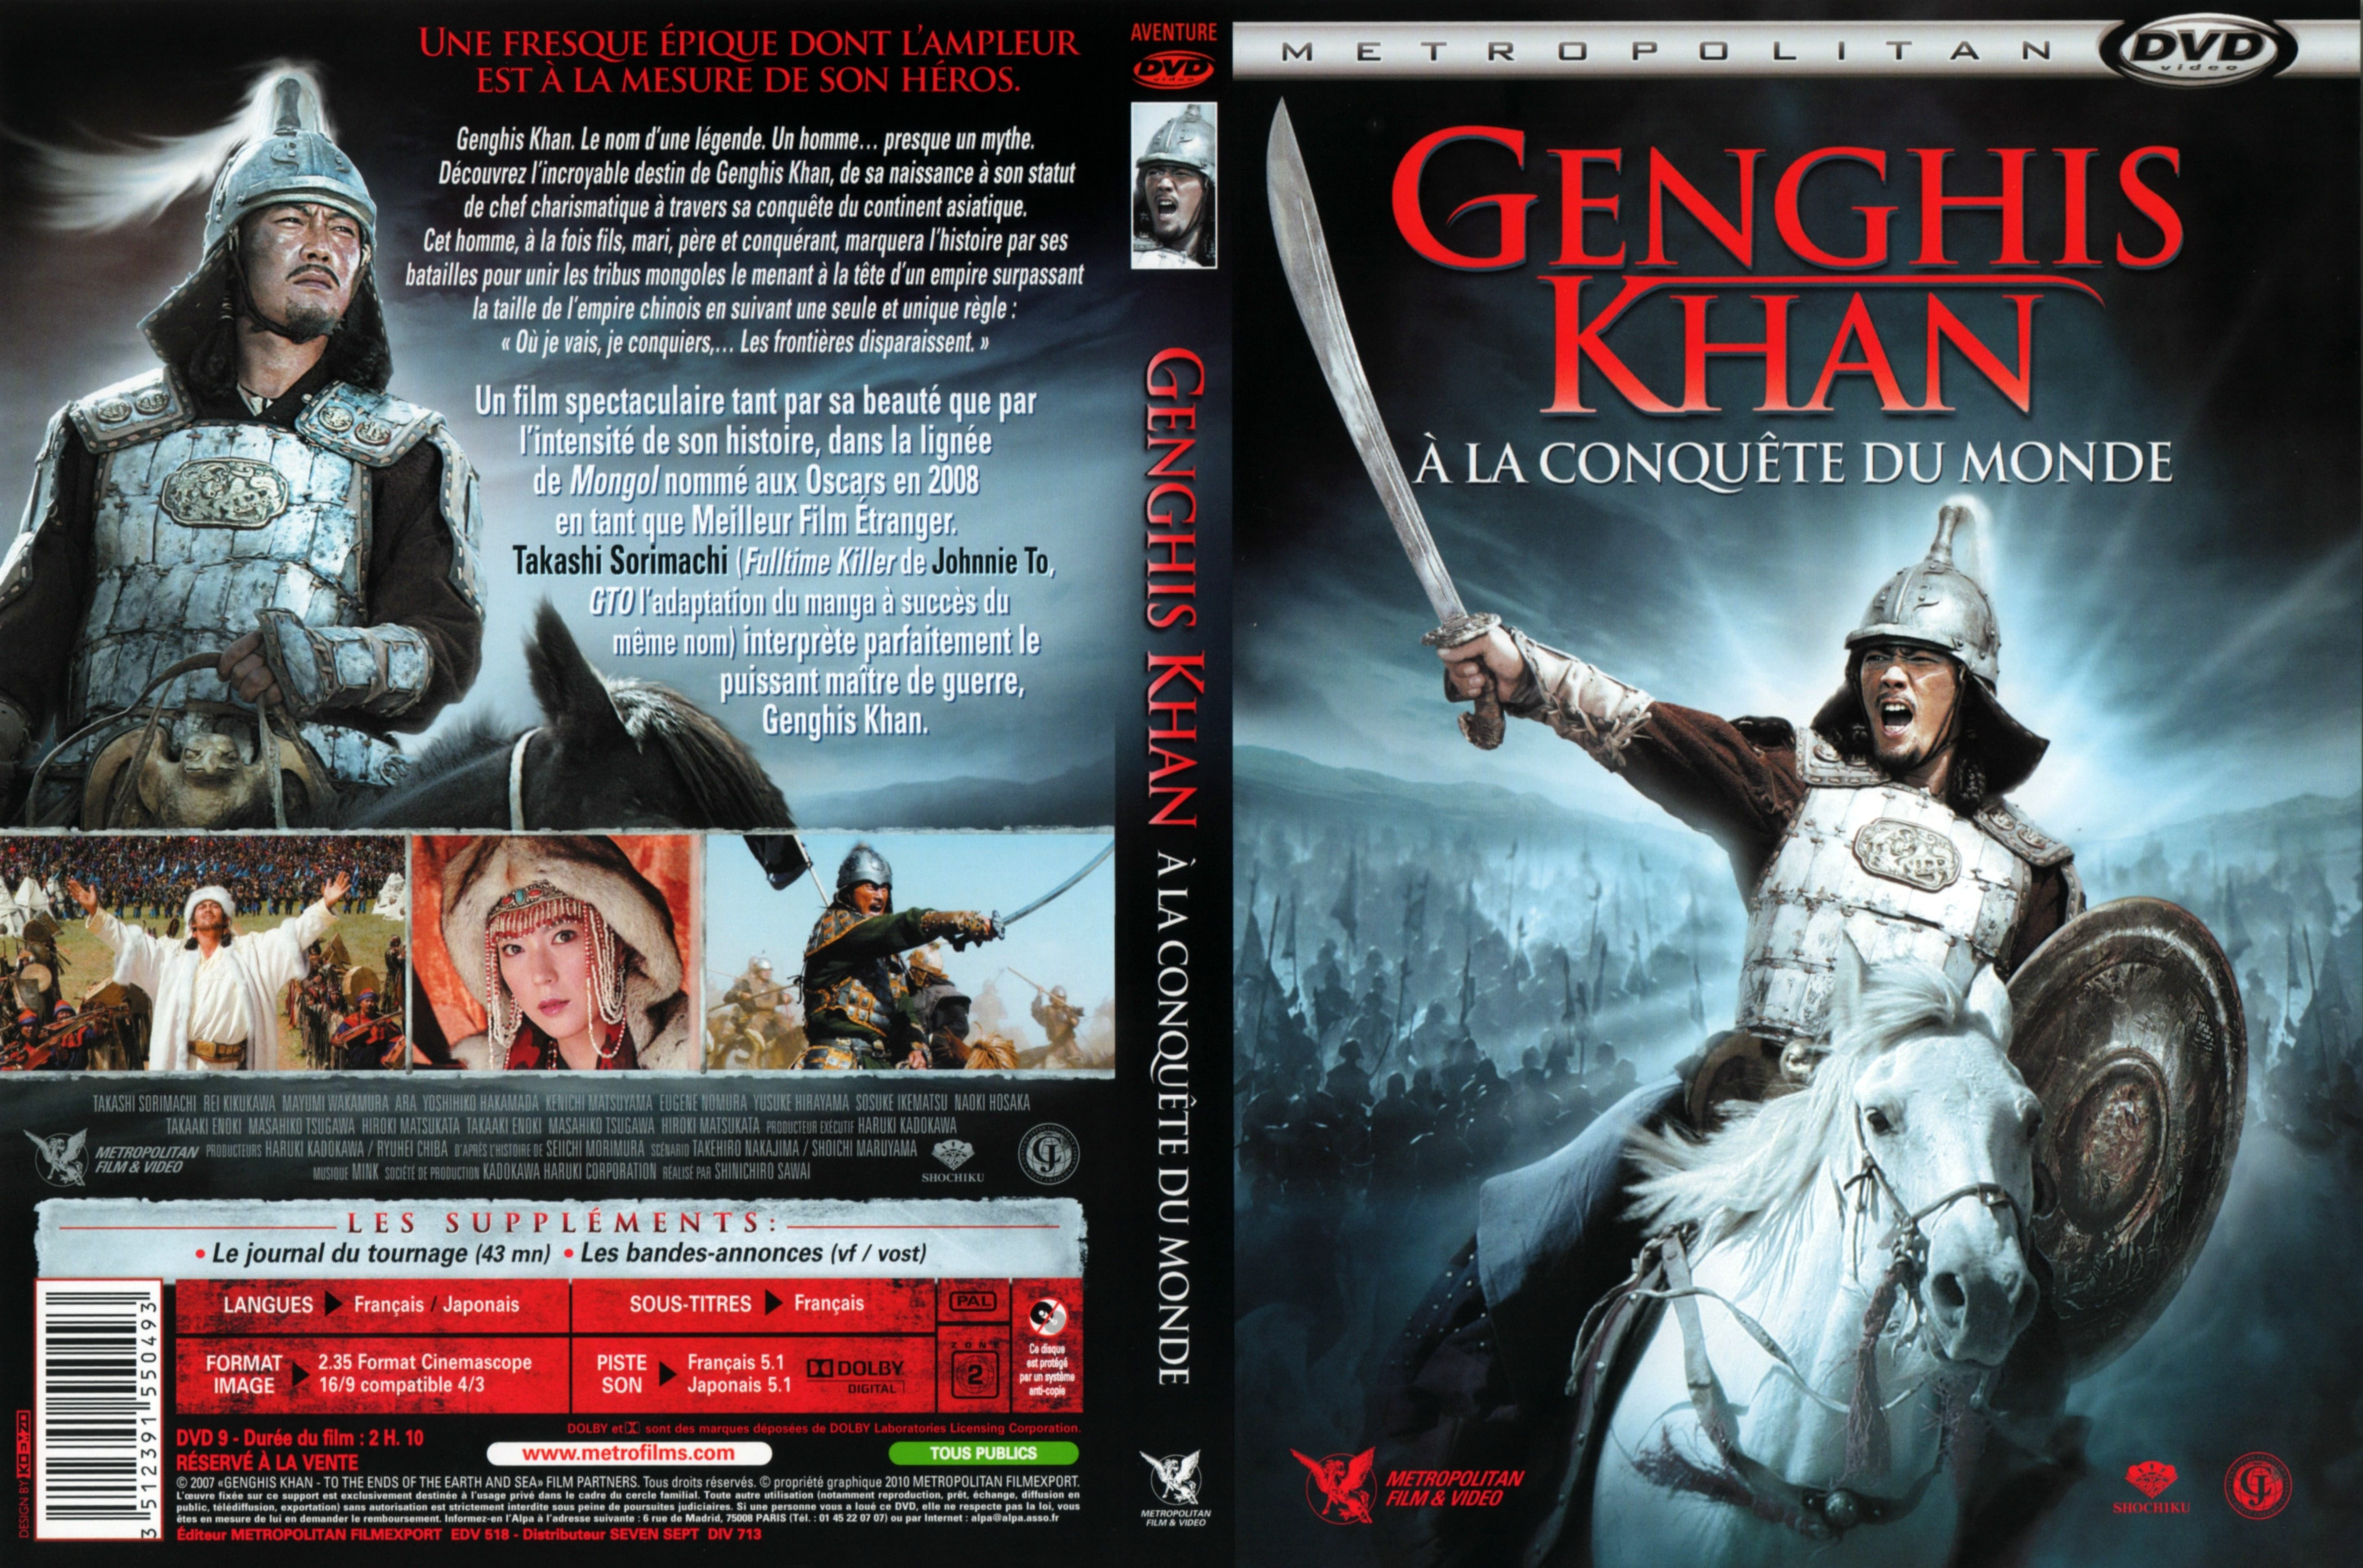 Jaquette DVD Genghis Khan  la conquete du monde